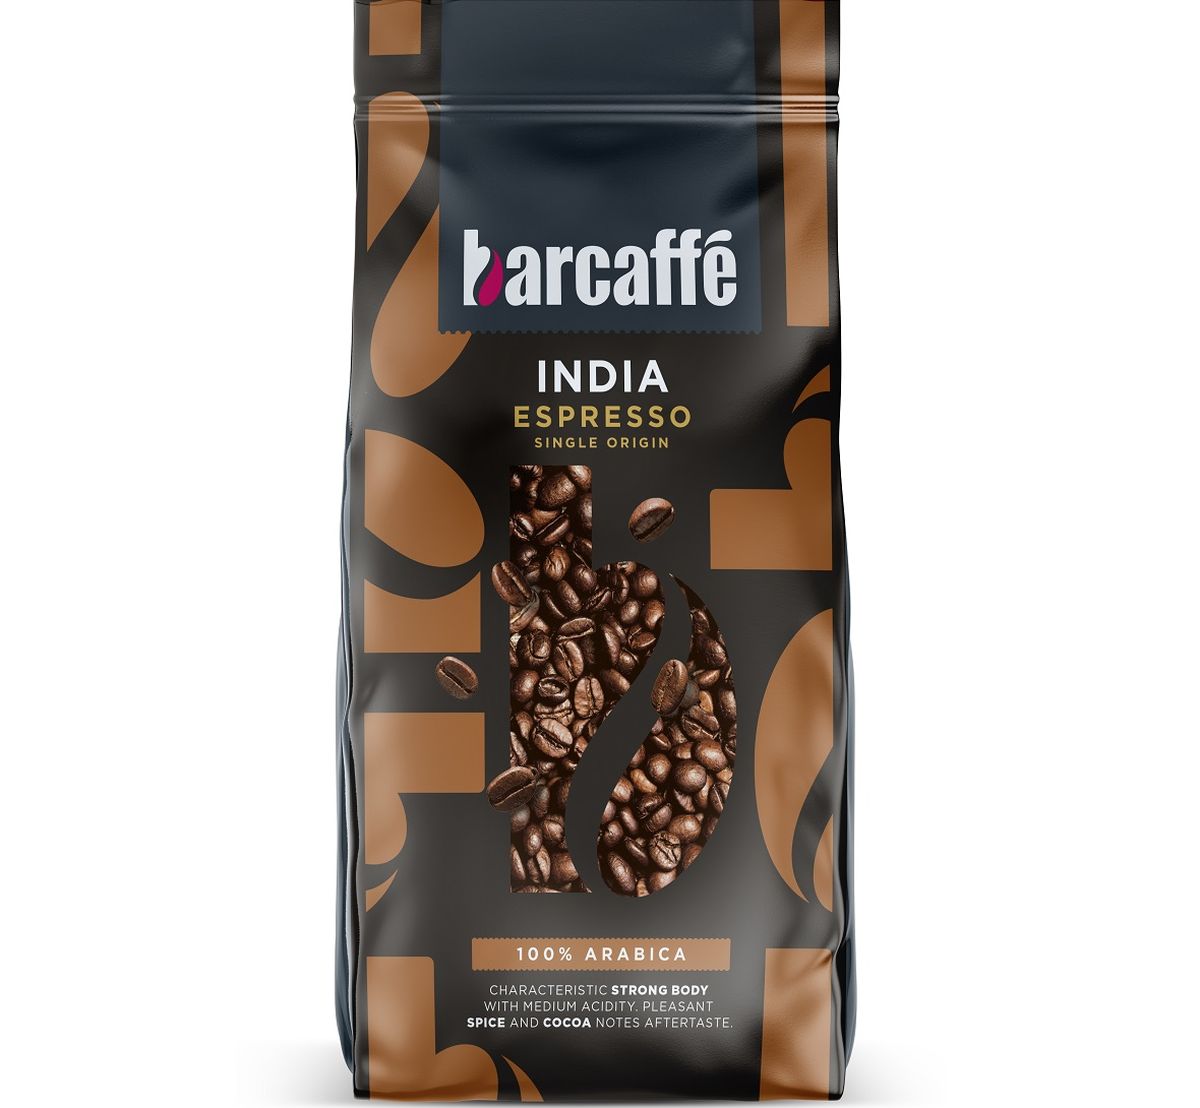 barcaffe indija